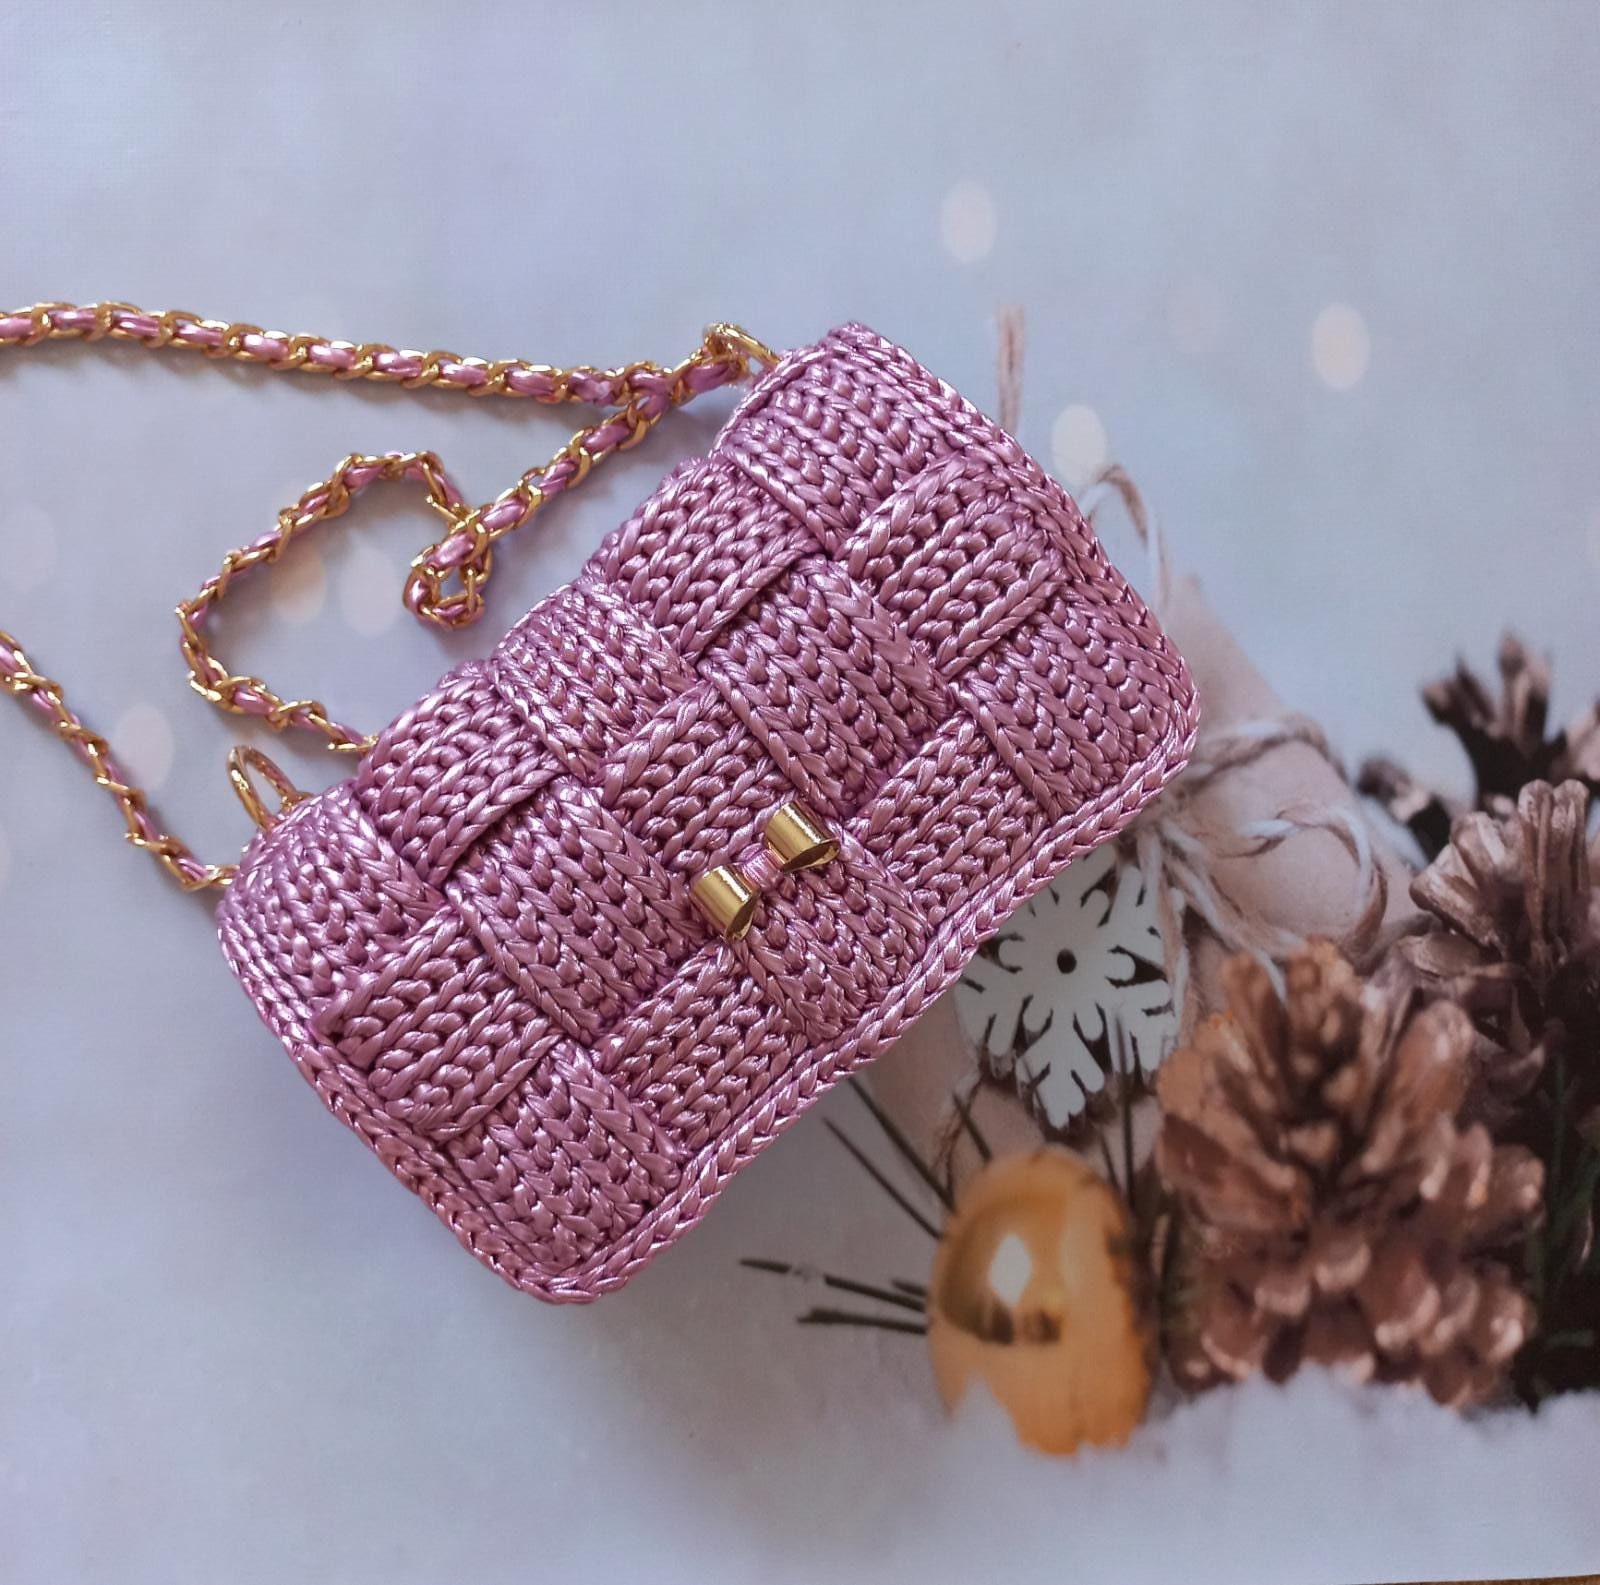 Easy Modern Crochet Bag Tutorial - Crochet Kingdom | Crochet bag, Crochet, Crochet  handbags